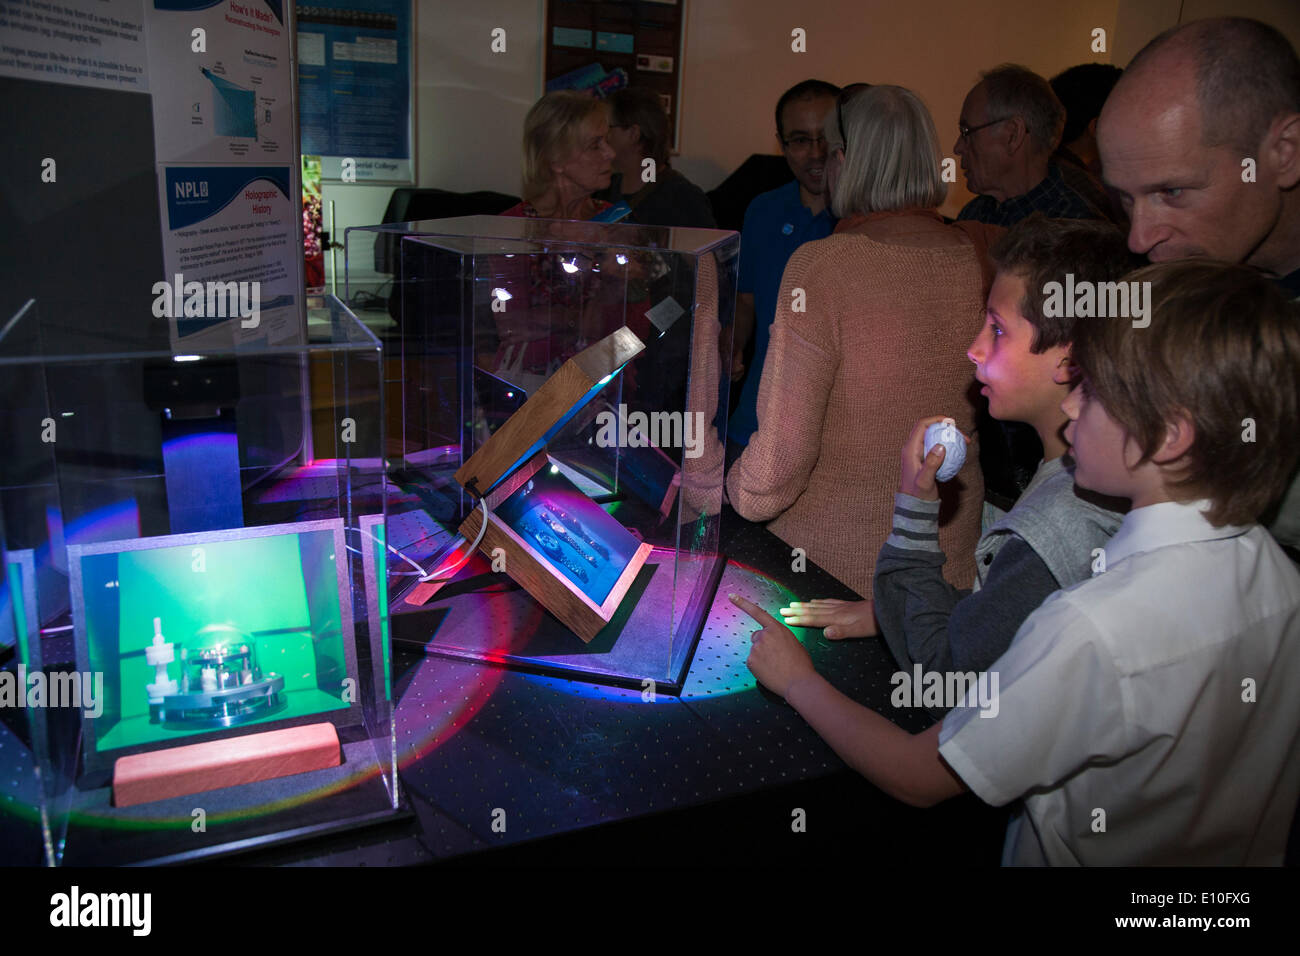 Visiteurs photographiés et admirer une exposition d'hologrammes pendant une journée portes ouvertes (ce qui se passe autour de tous les deux ans) voyage scolaire / visite au National Physical Laboratory (NPL), Teddington. Londres. UK. Banque D'Images